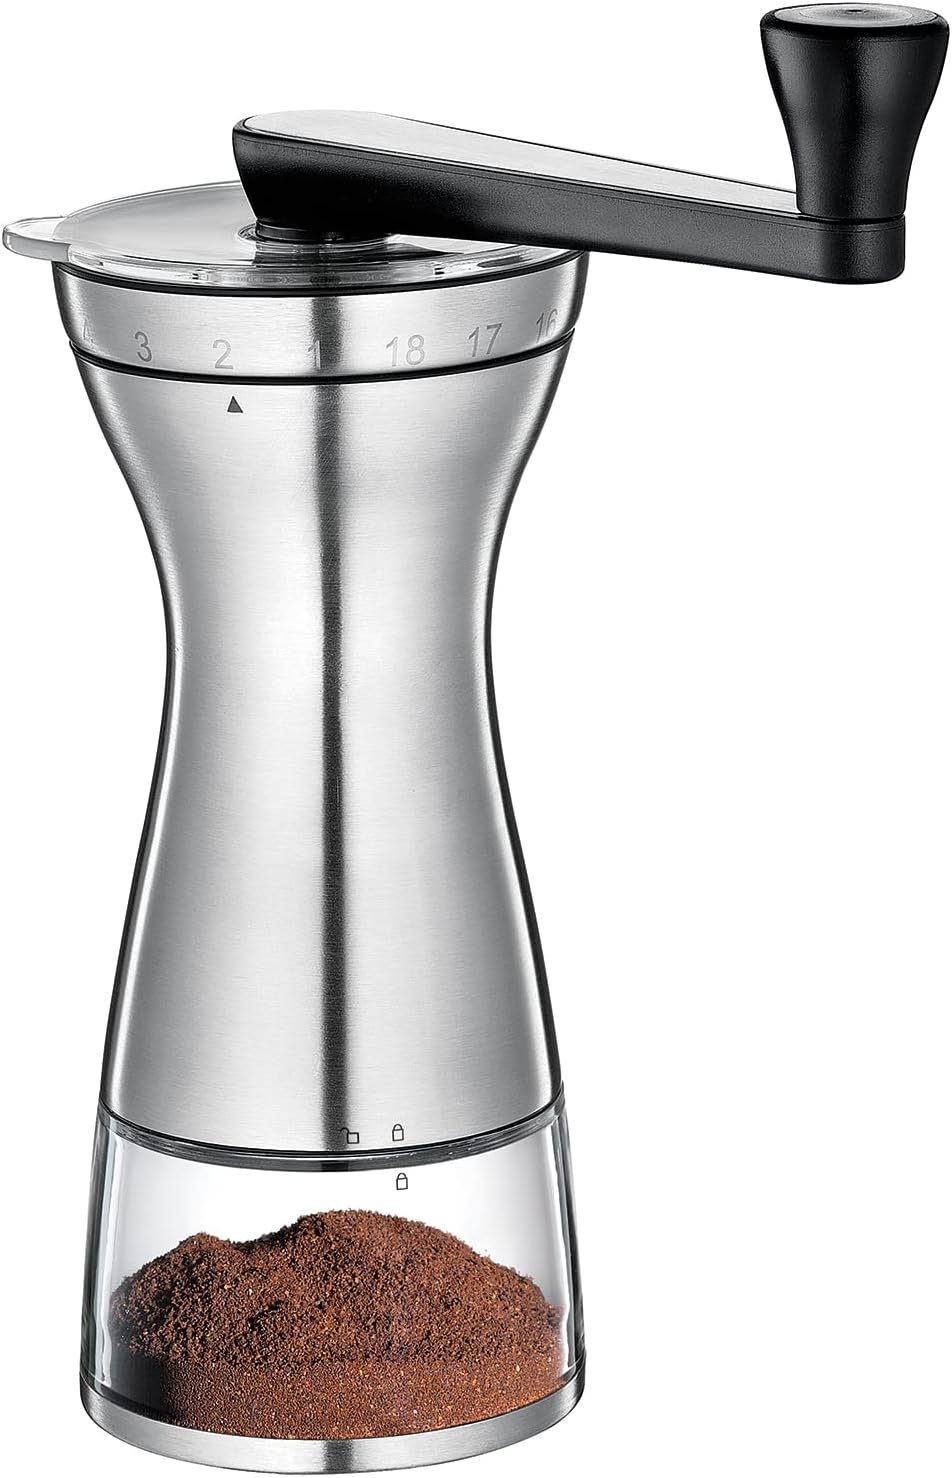 Zassenhaus 041156 coffee grinder stainless steel silver, 25 x 9 cm